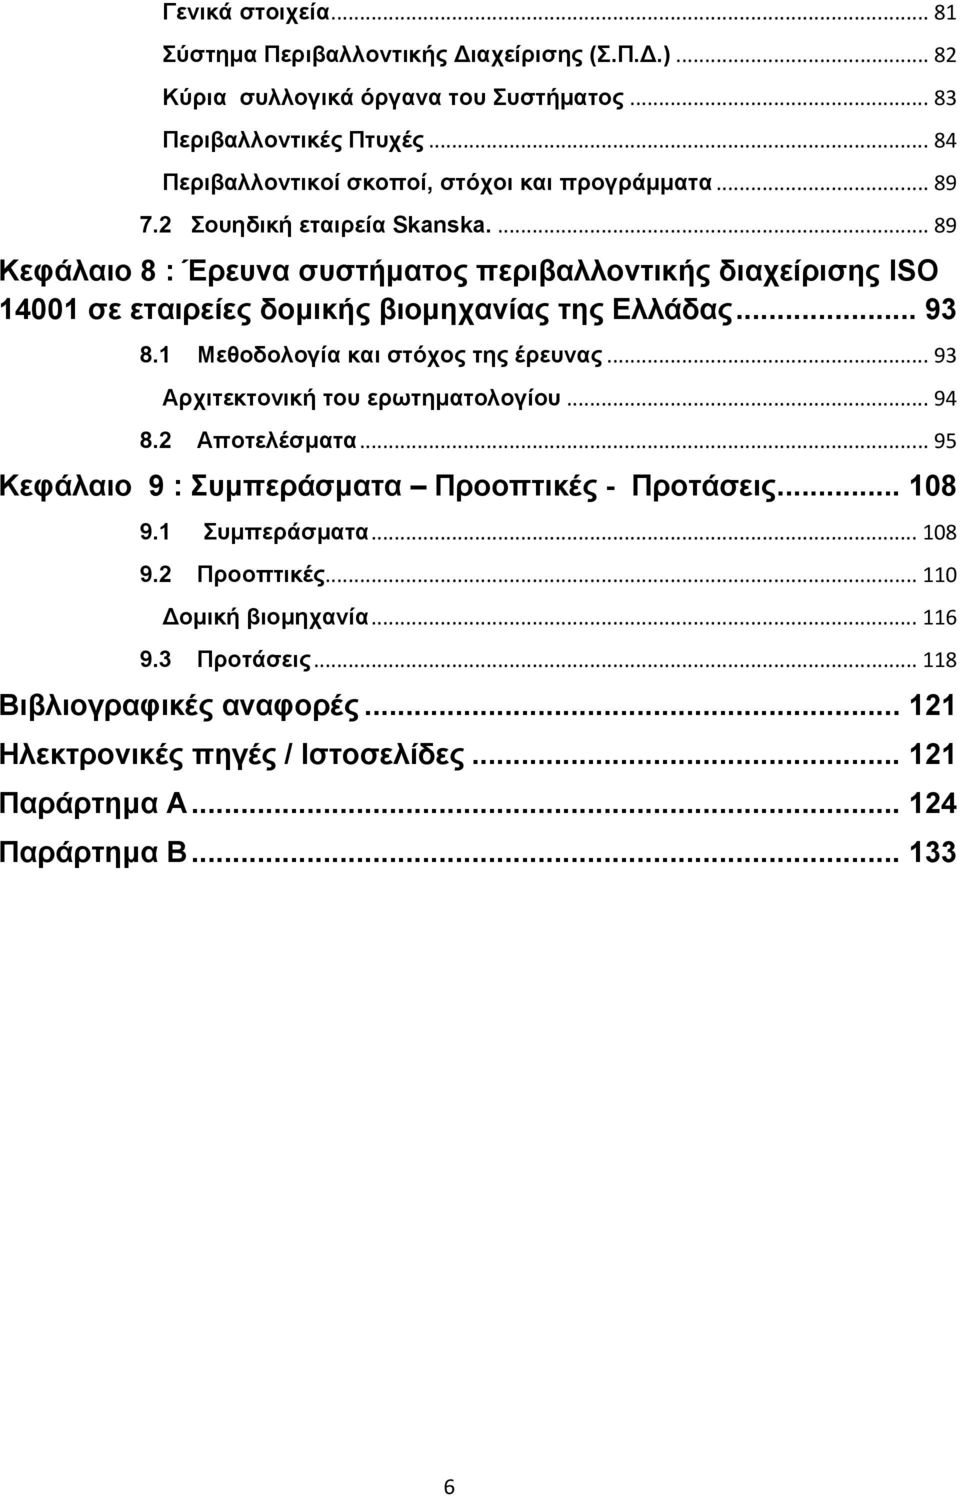 ... 89 Κεφάλαιο 8 : Έρευνα συστήματος περιβαλλοντικής διαχείρισης ISO 14001 σε εταιρείες δομικής βιομηχανίας της Ελλάδας... 93 8.1 Μεθοδολογία και στόχος της έρευνας.